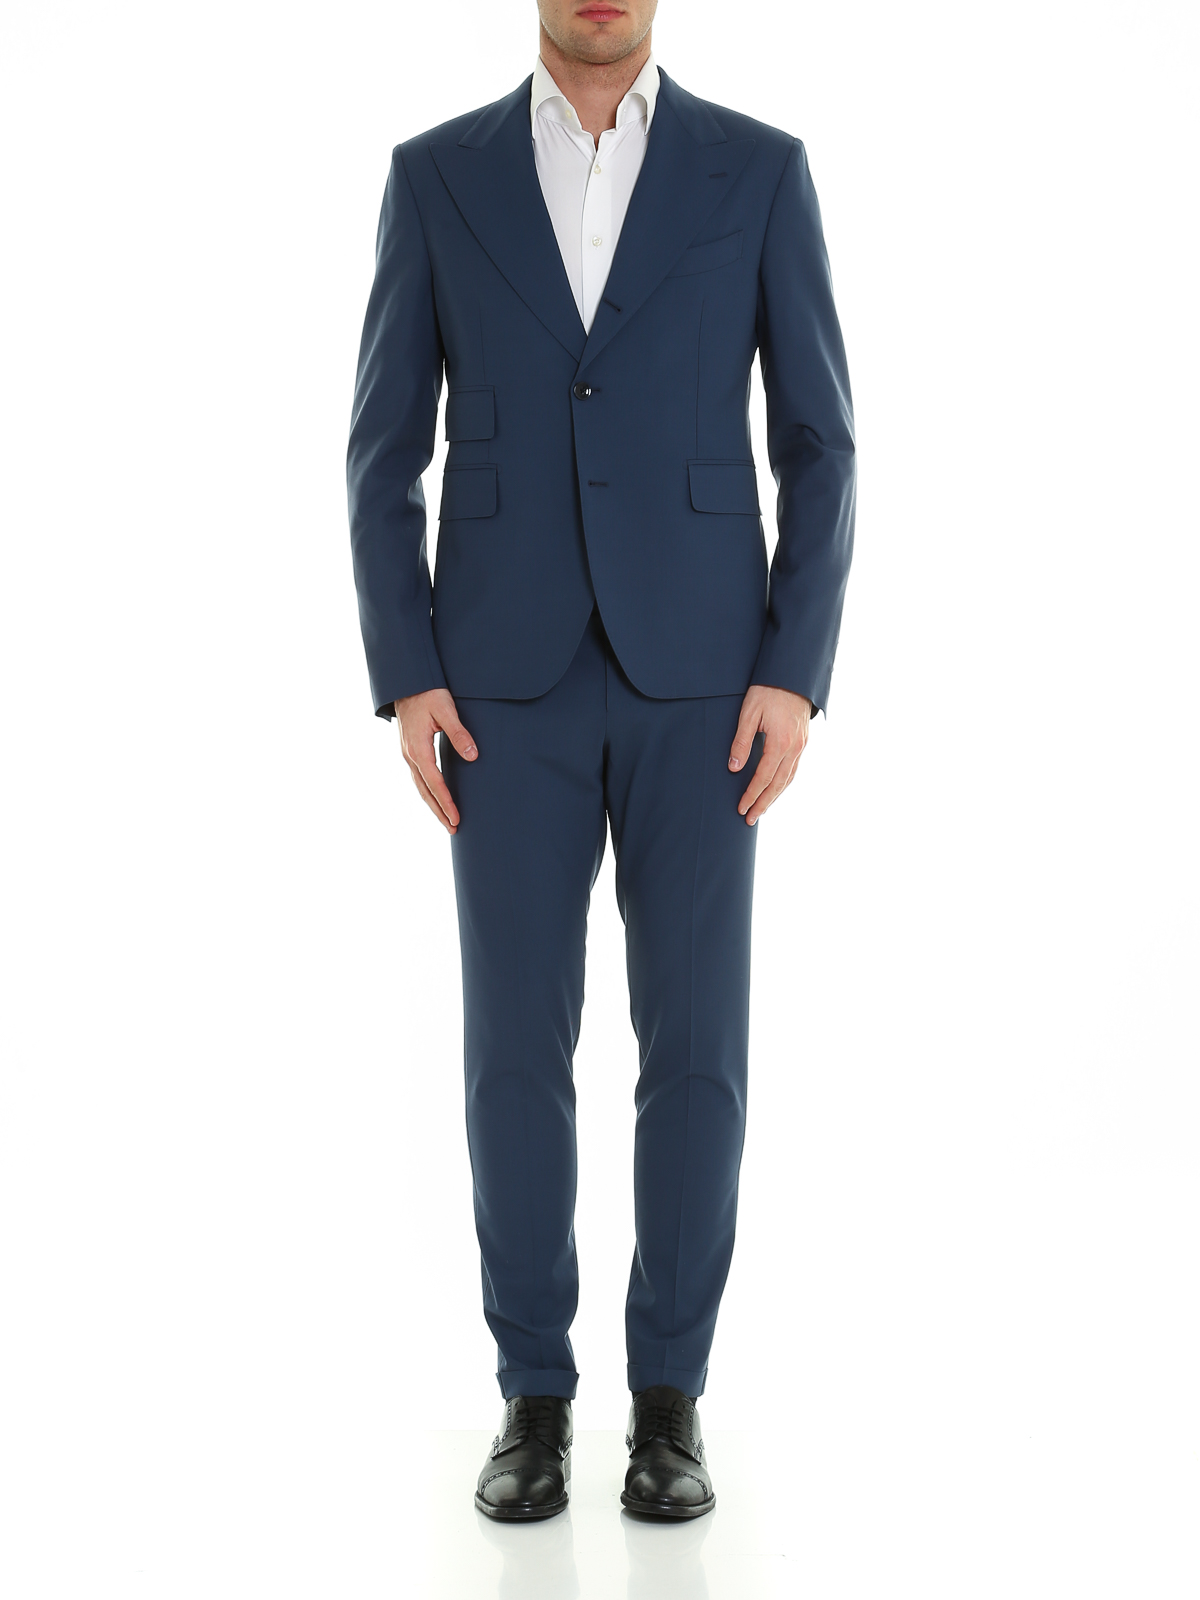 Uomo Abbigliamento da Completi da Completi a 2 pezzi AbitoDolce & Gabbana in Lana da Uomo colore Blu 